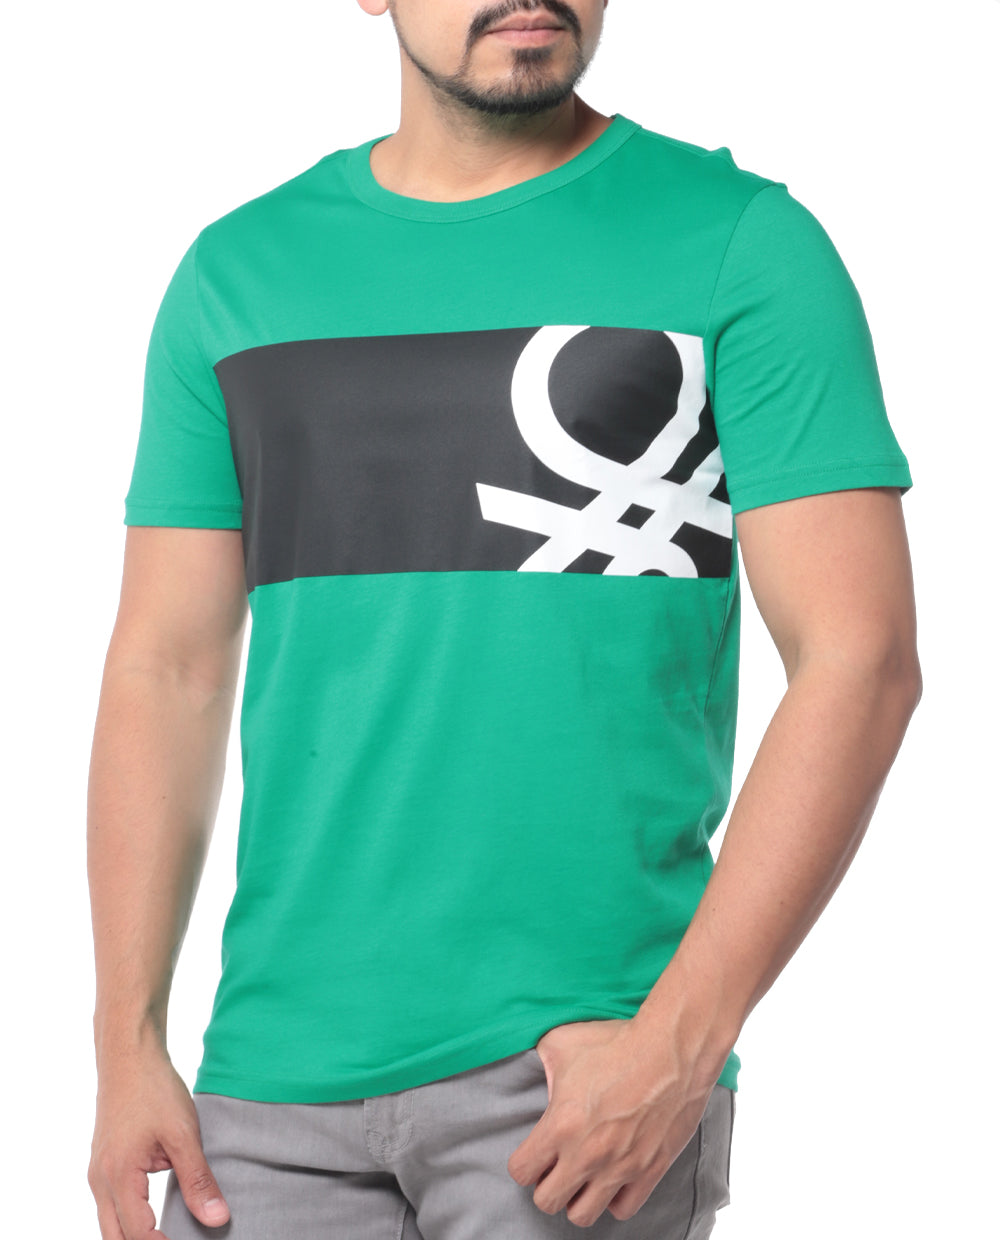 T-shirt para hombre con logo de Benetton